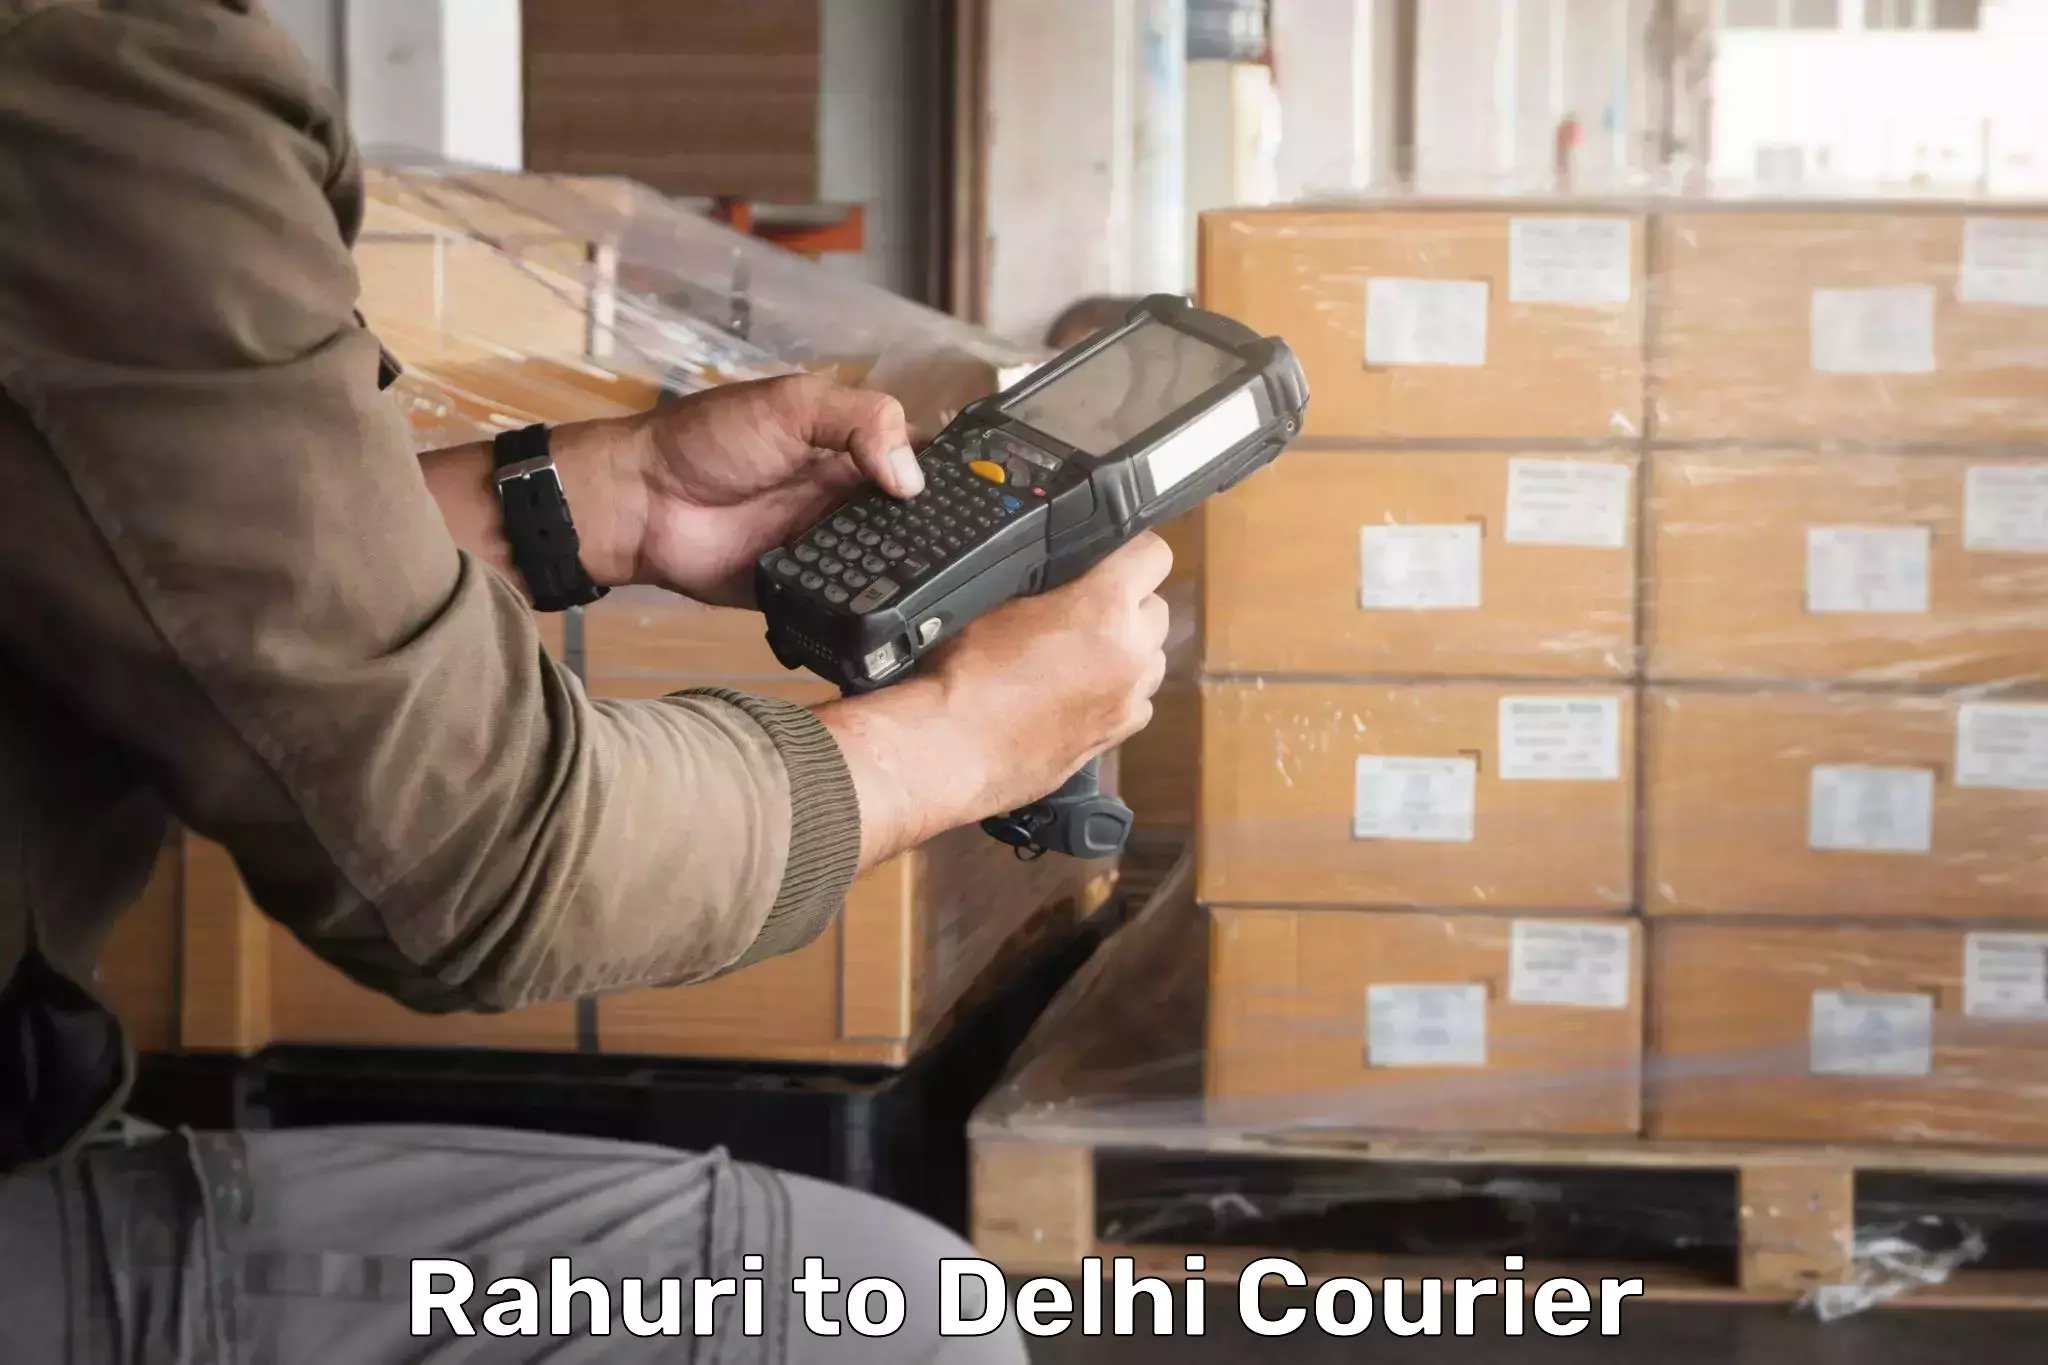 Express shipping Rahuri to Lodhi Road